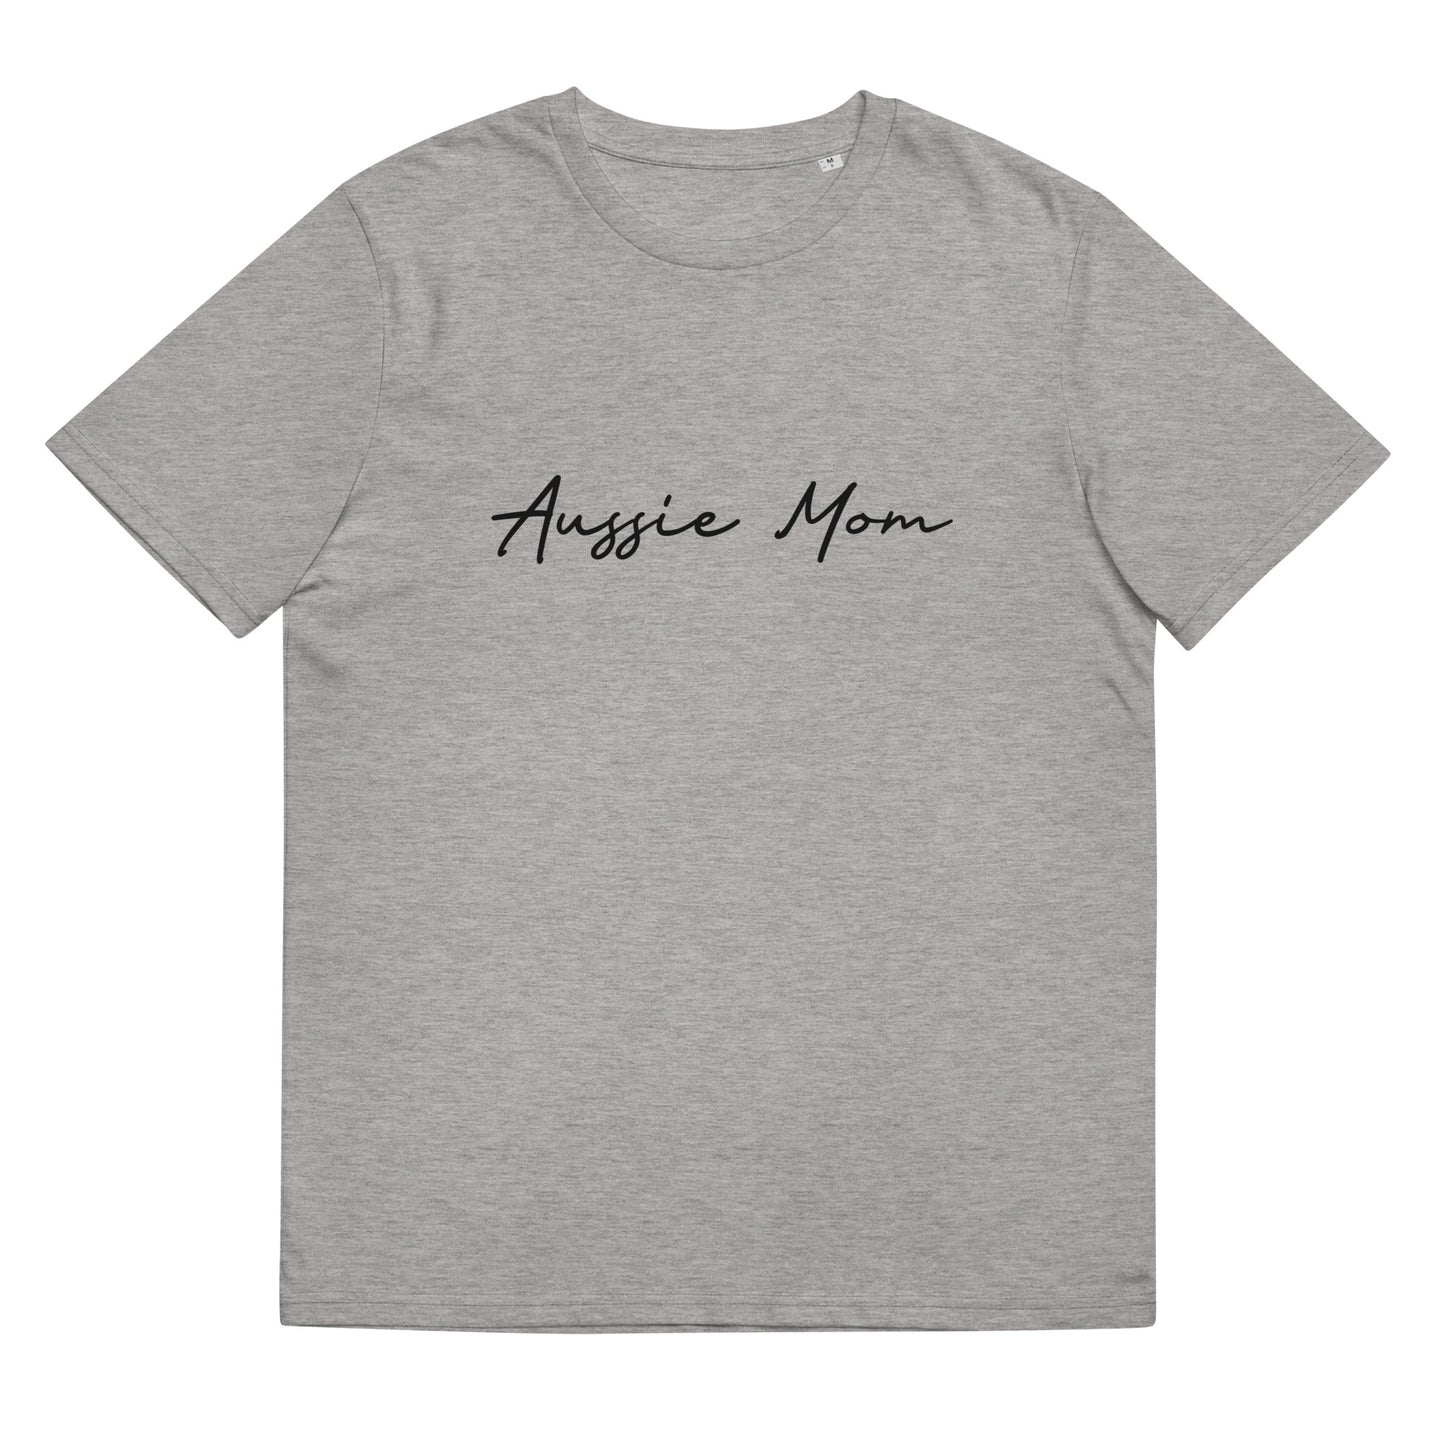 T-shirt Aussie Mom